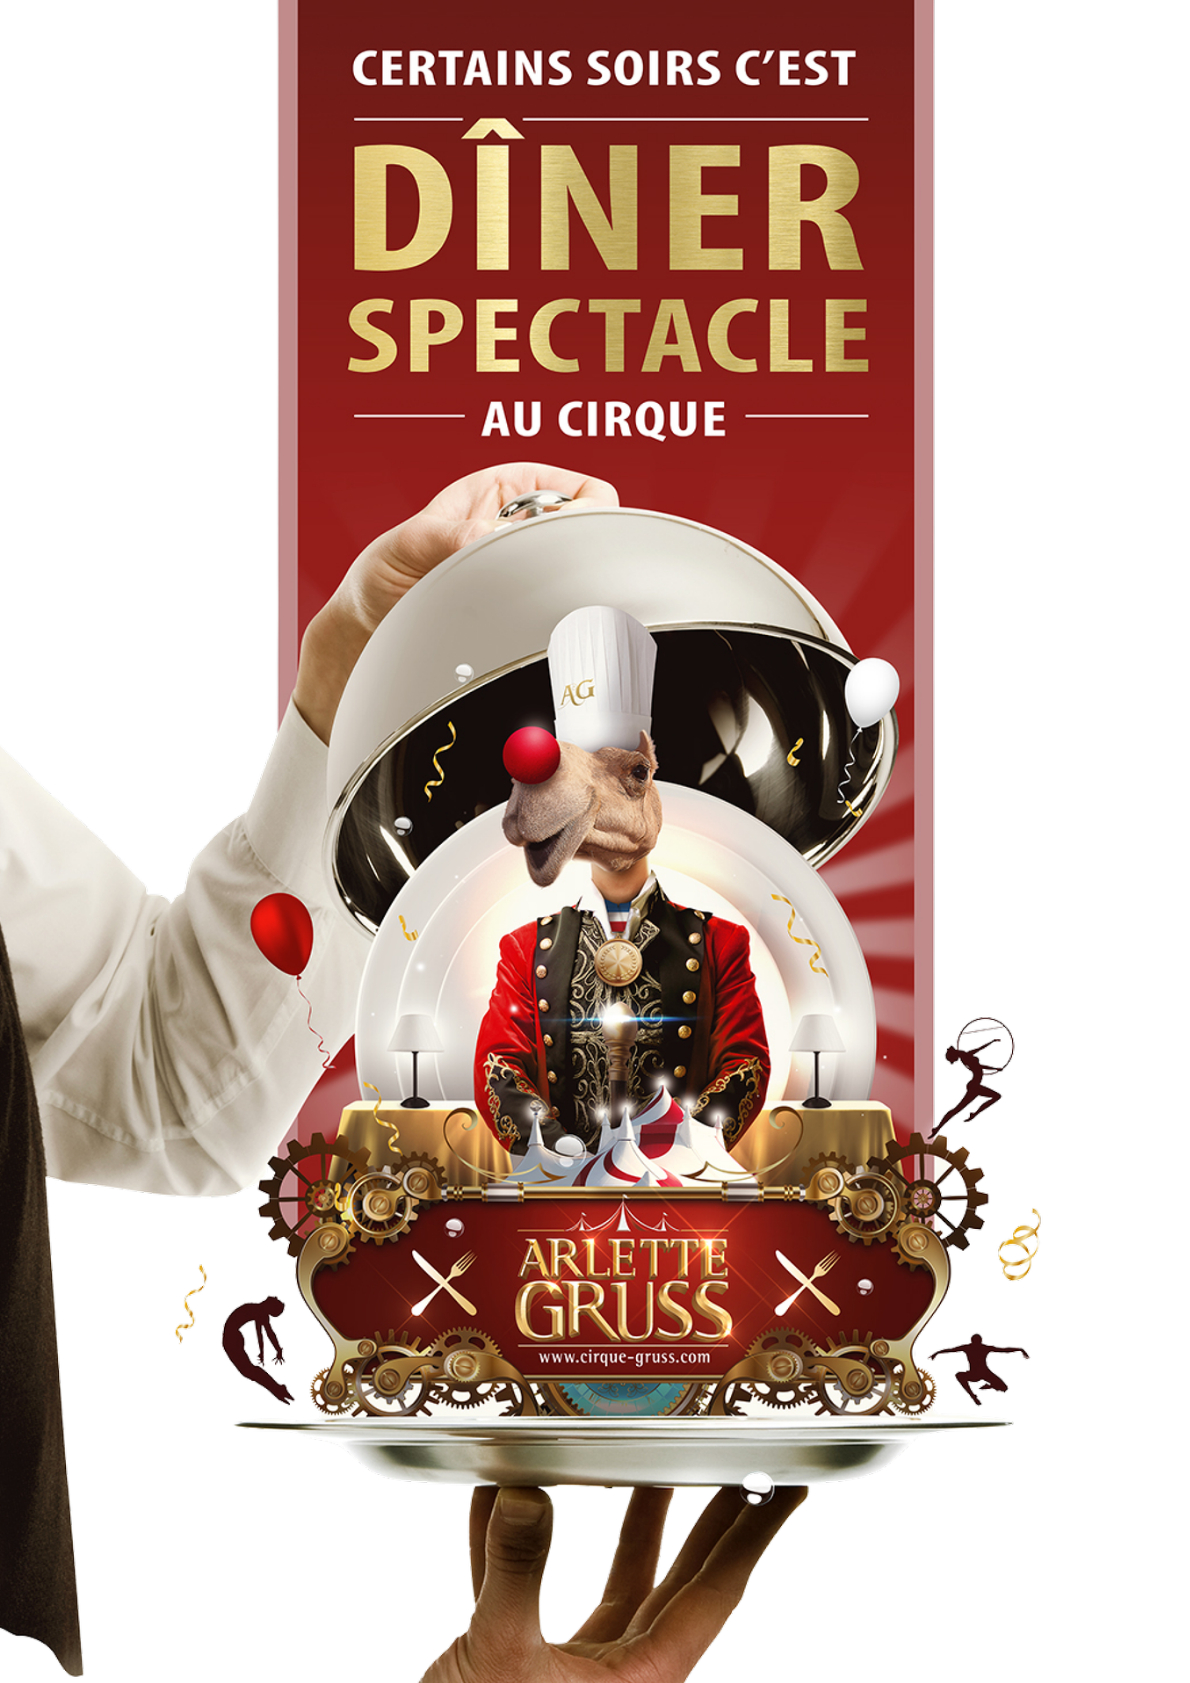 Diner Spectacle - Cirque Arlette Gruss - Nouveau Spectacle EXTRAVAGANT